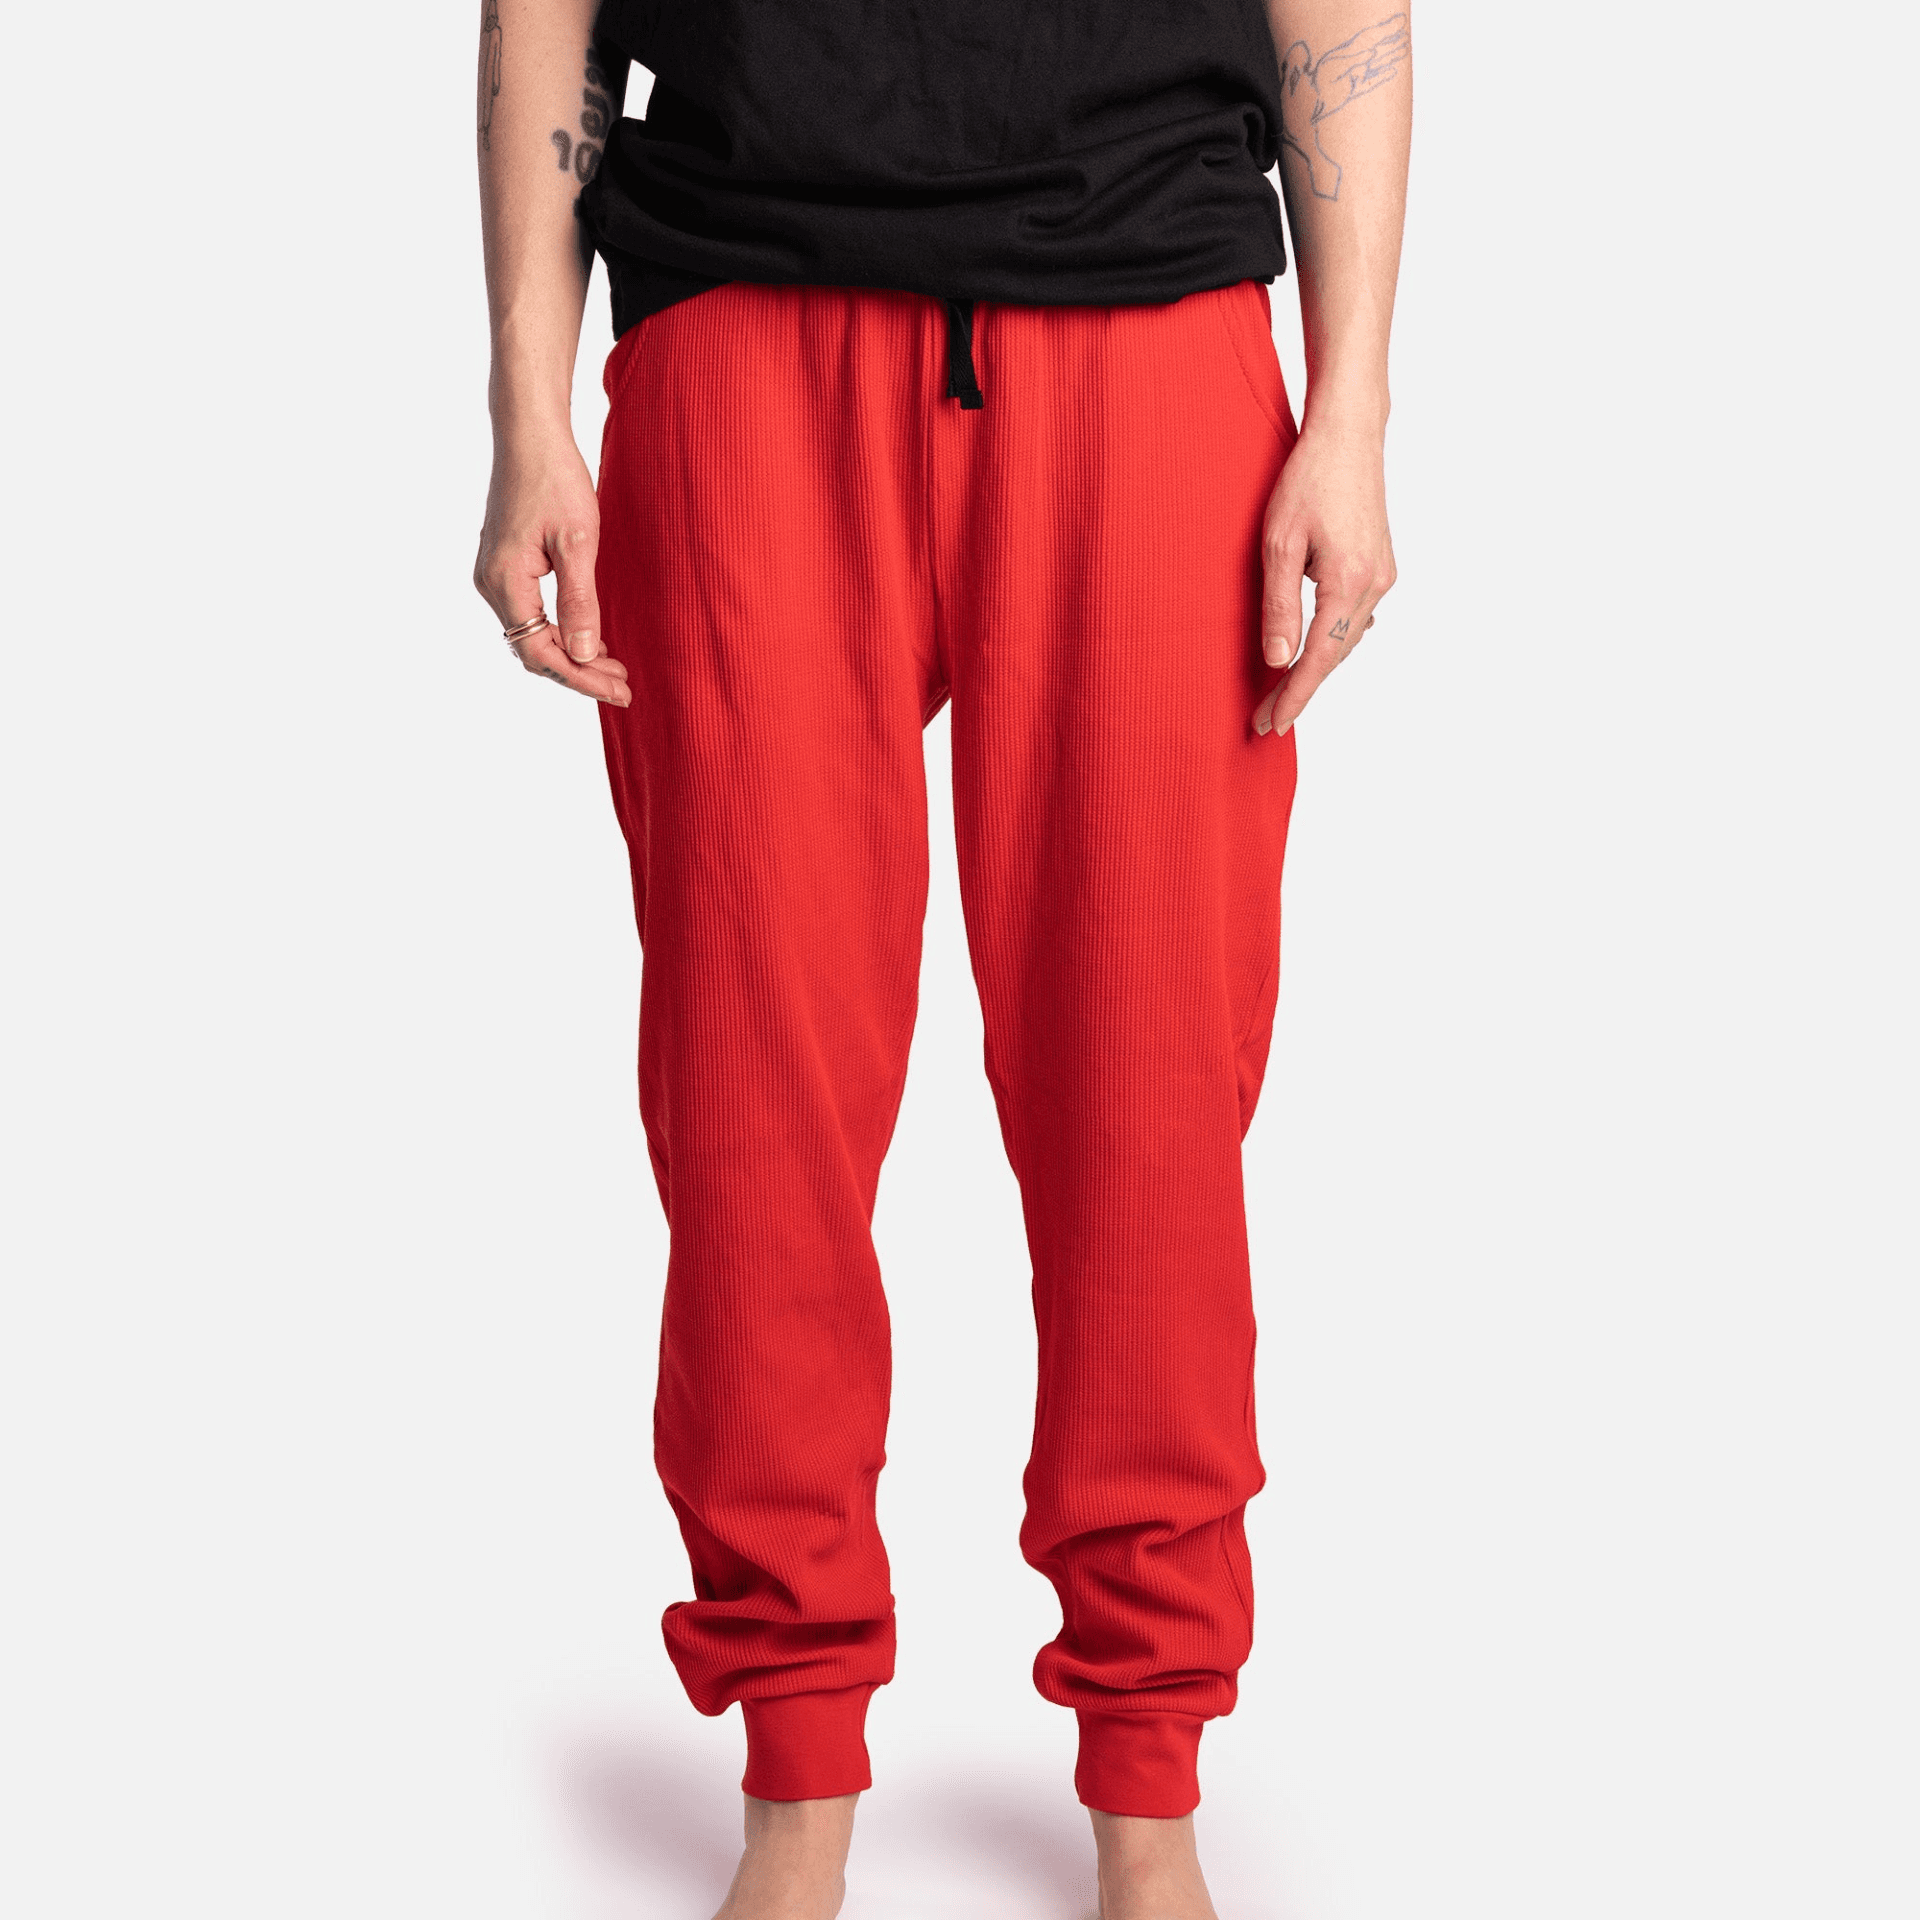 Matching Dog And Owner Pajamas Bundle- Red